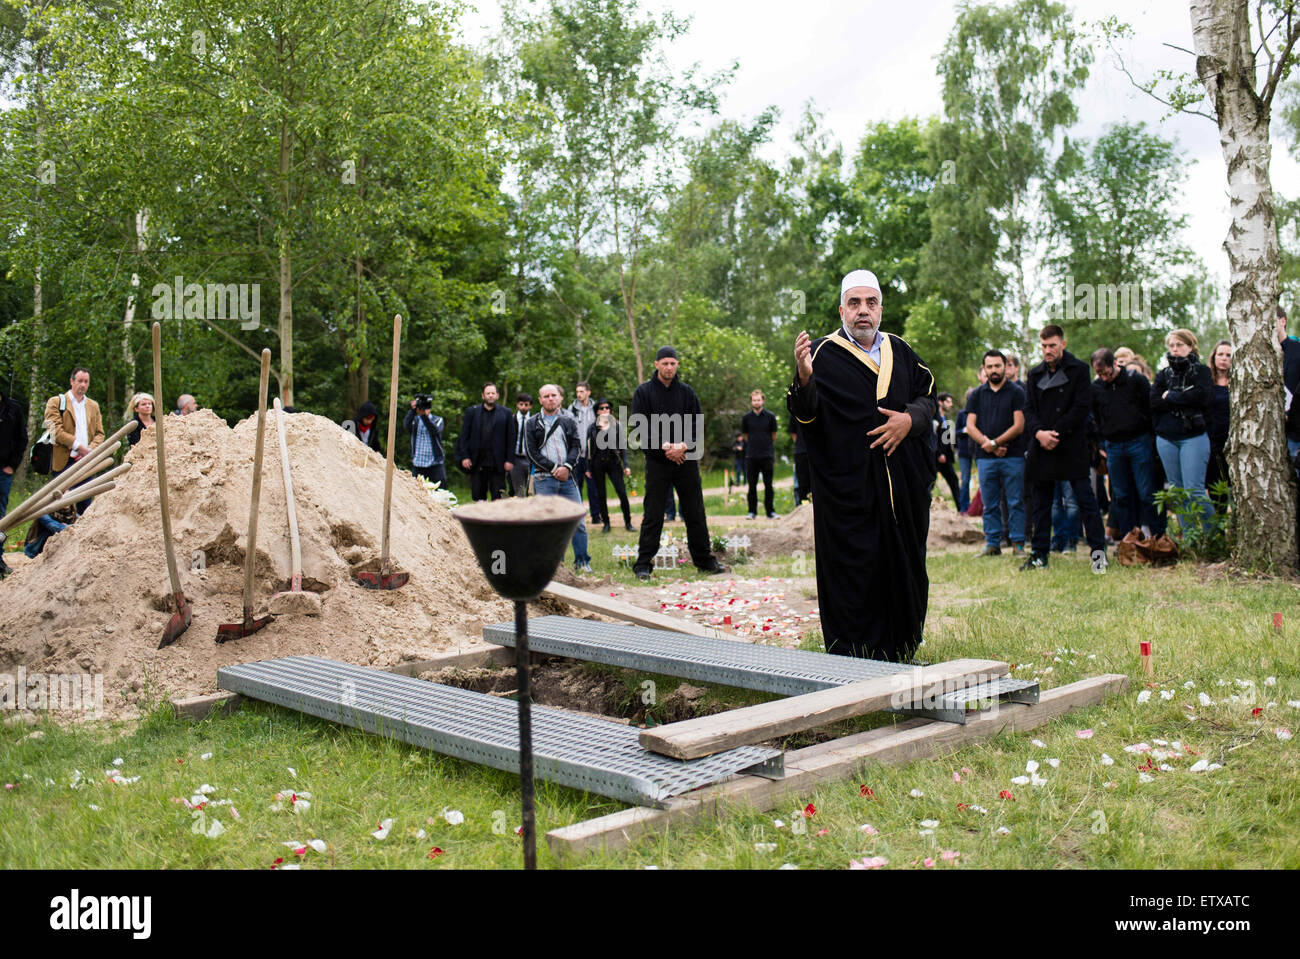 Imam Abdallah Hajjir (C) betet am Grab einer Frau aus Syrien, die im Mittelmeer in der muslimischen Abschnitt des Friedhofs in Berlin, Deutschland, Berlin-Gatow 16. Juni 2015 ertrunken. Die Beerdigung ist eine Aktion von "Zentrum für politische Schönheit" Aktivisten gegen die EU Flüchtlingspolitik protestieren organisiert. Die Frau Hinterbliebenen, die in Deutschland leben und vereinbart, die Aktion waren nicht anwesend. Im Gegensatz zu den Aktivisten Erklärung wird die Frau Kind, die auch im Flug ertrunken, nicht mit ihr begraben werden. Beide waren nach Angaben der Aktivisten an Bord eines Schiffes Stockfoto